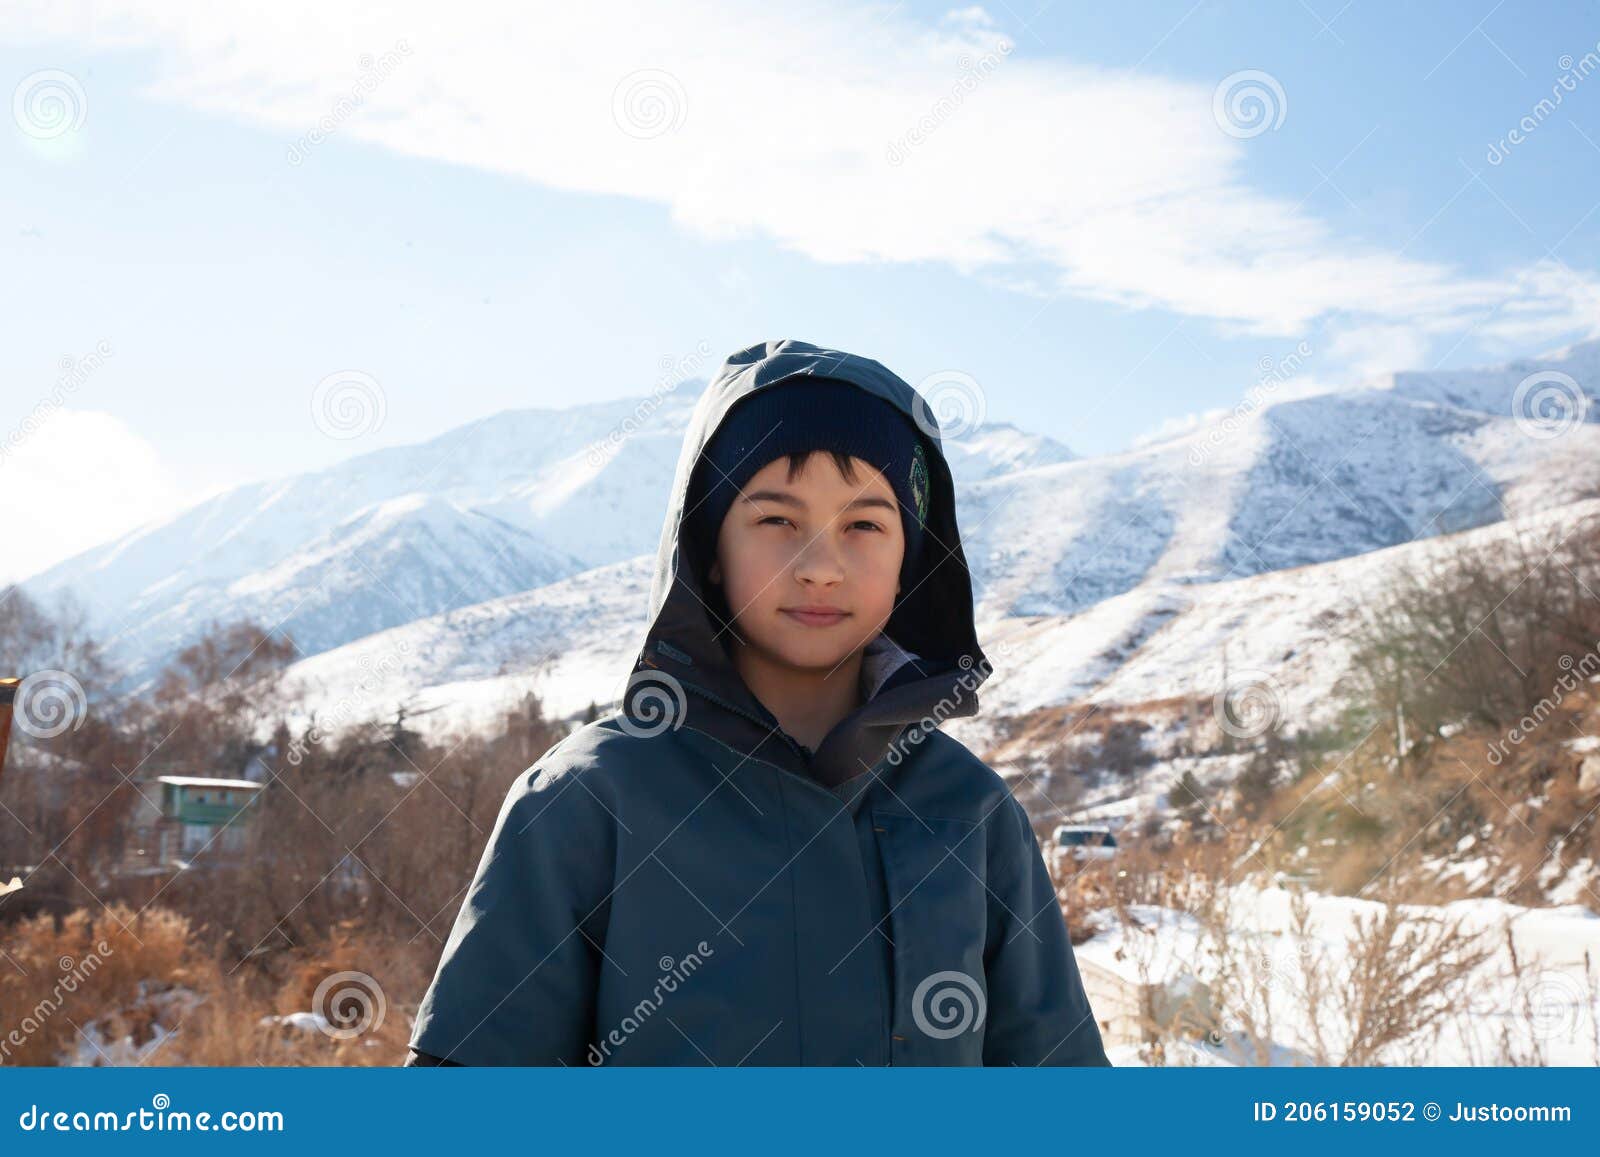 Caminando En Montañas Soleadas Ropa De Niños Para Las Montañas Retrato Cercano Sonriente Foto de archivo - de gente, 206159052